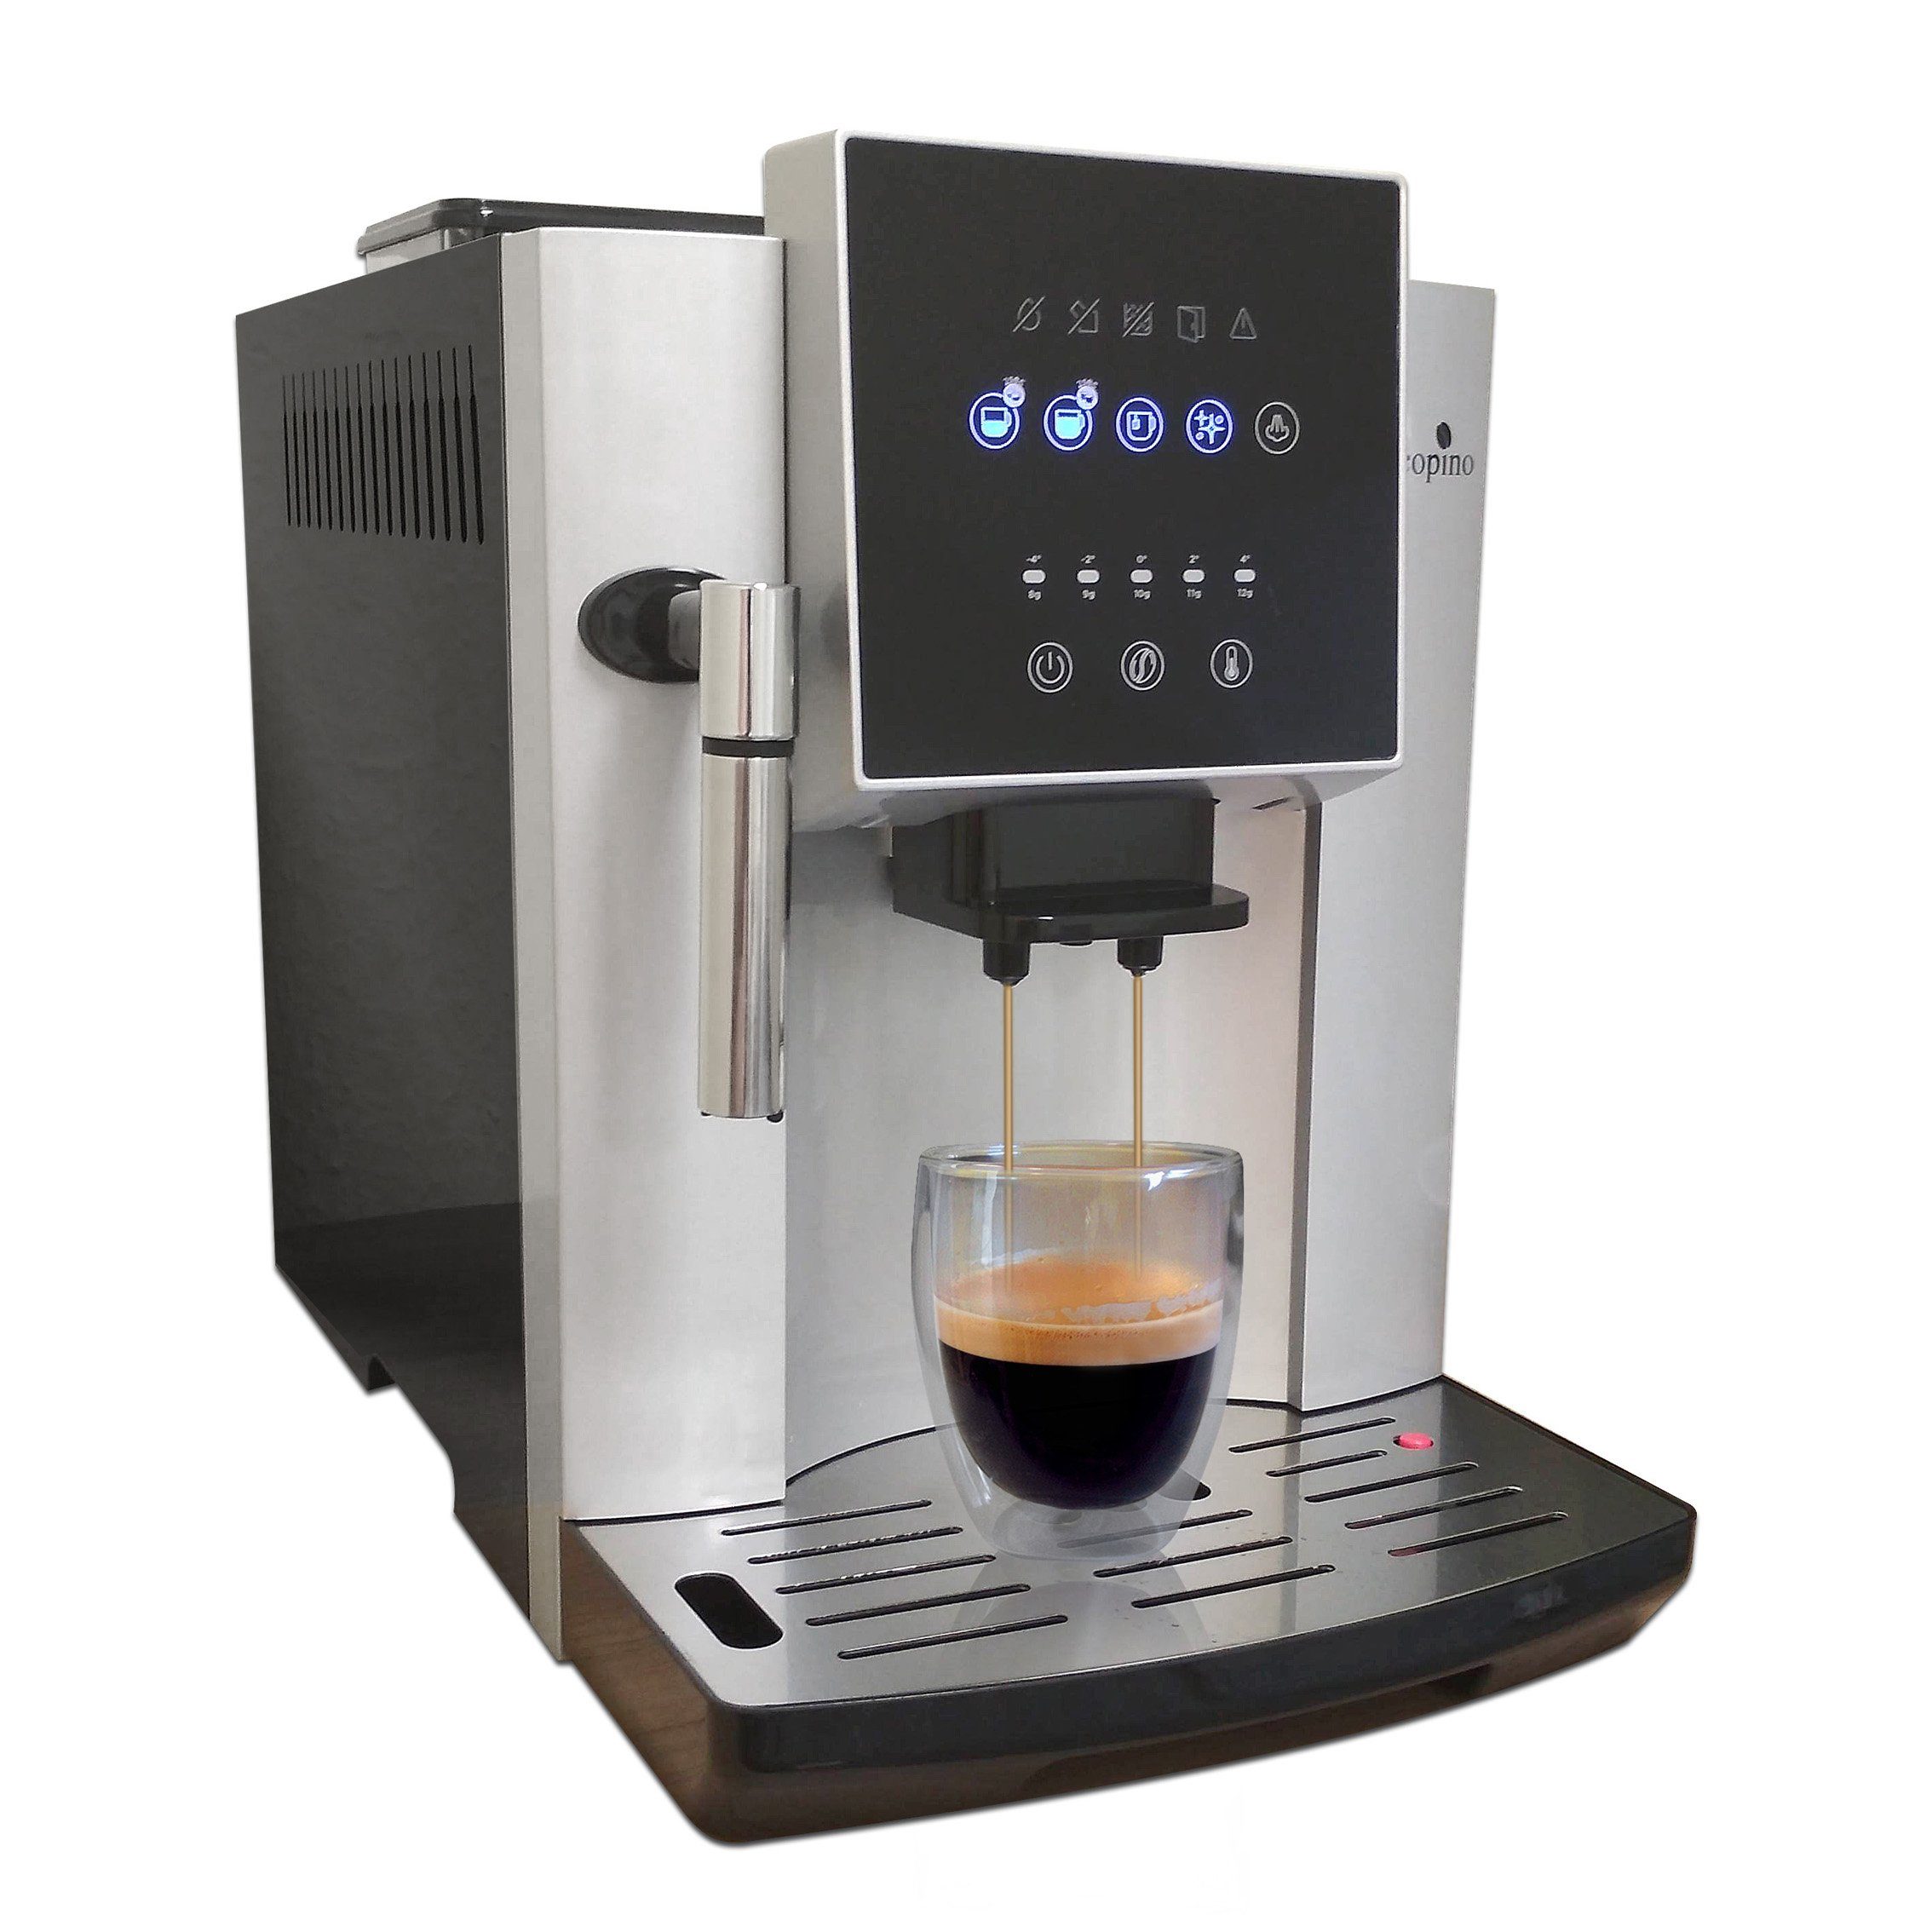 ULKA Kaffeevollautomat Acopino Display Herausnehmbare Brüheinheit, Dampfdüse Hochleistungspumpe, für großes mit Milchschaum, Napoli perfekten